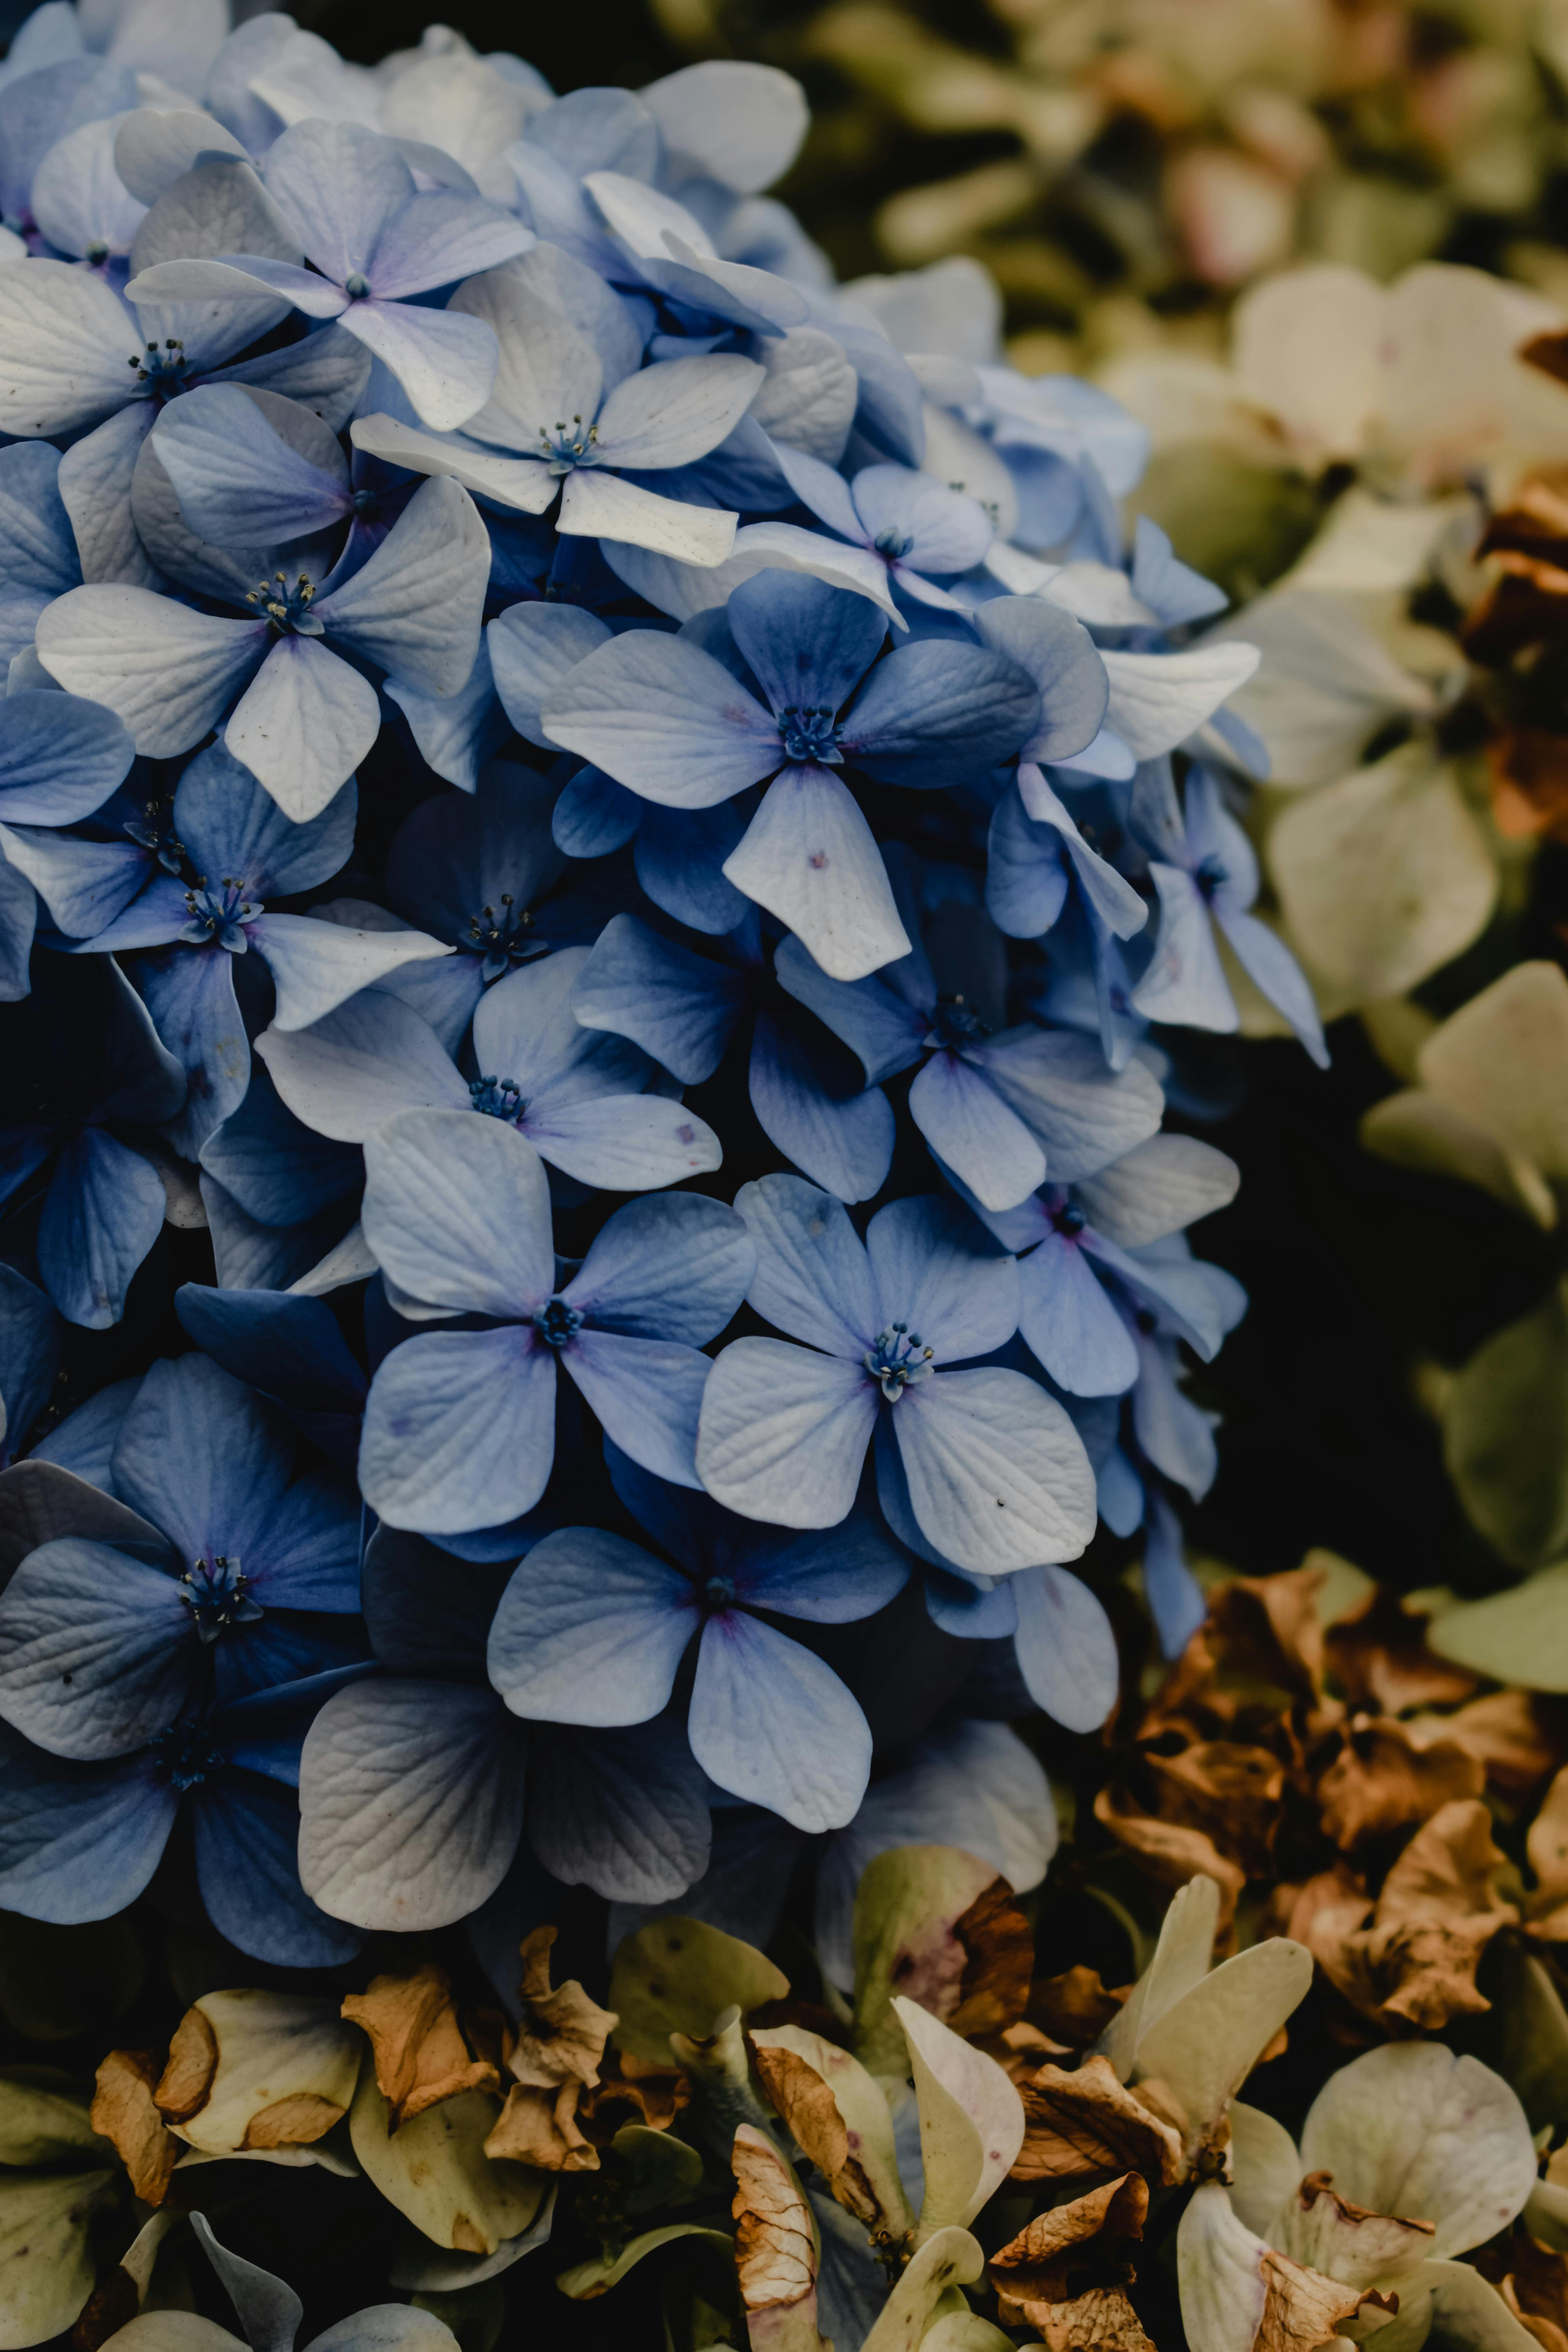 Hãy chiêm ngưỡng vẻ đẹp mê hồn của Hoa Cẩm Tú Cầu thông qua hình ảnh sắc nét và tuyệt đẹp. Bạn sẽ không thể rời mắt khỏi những màu sắc rực rỡ, tinh tế của loài hoa này.